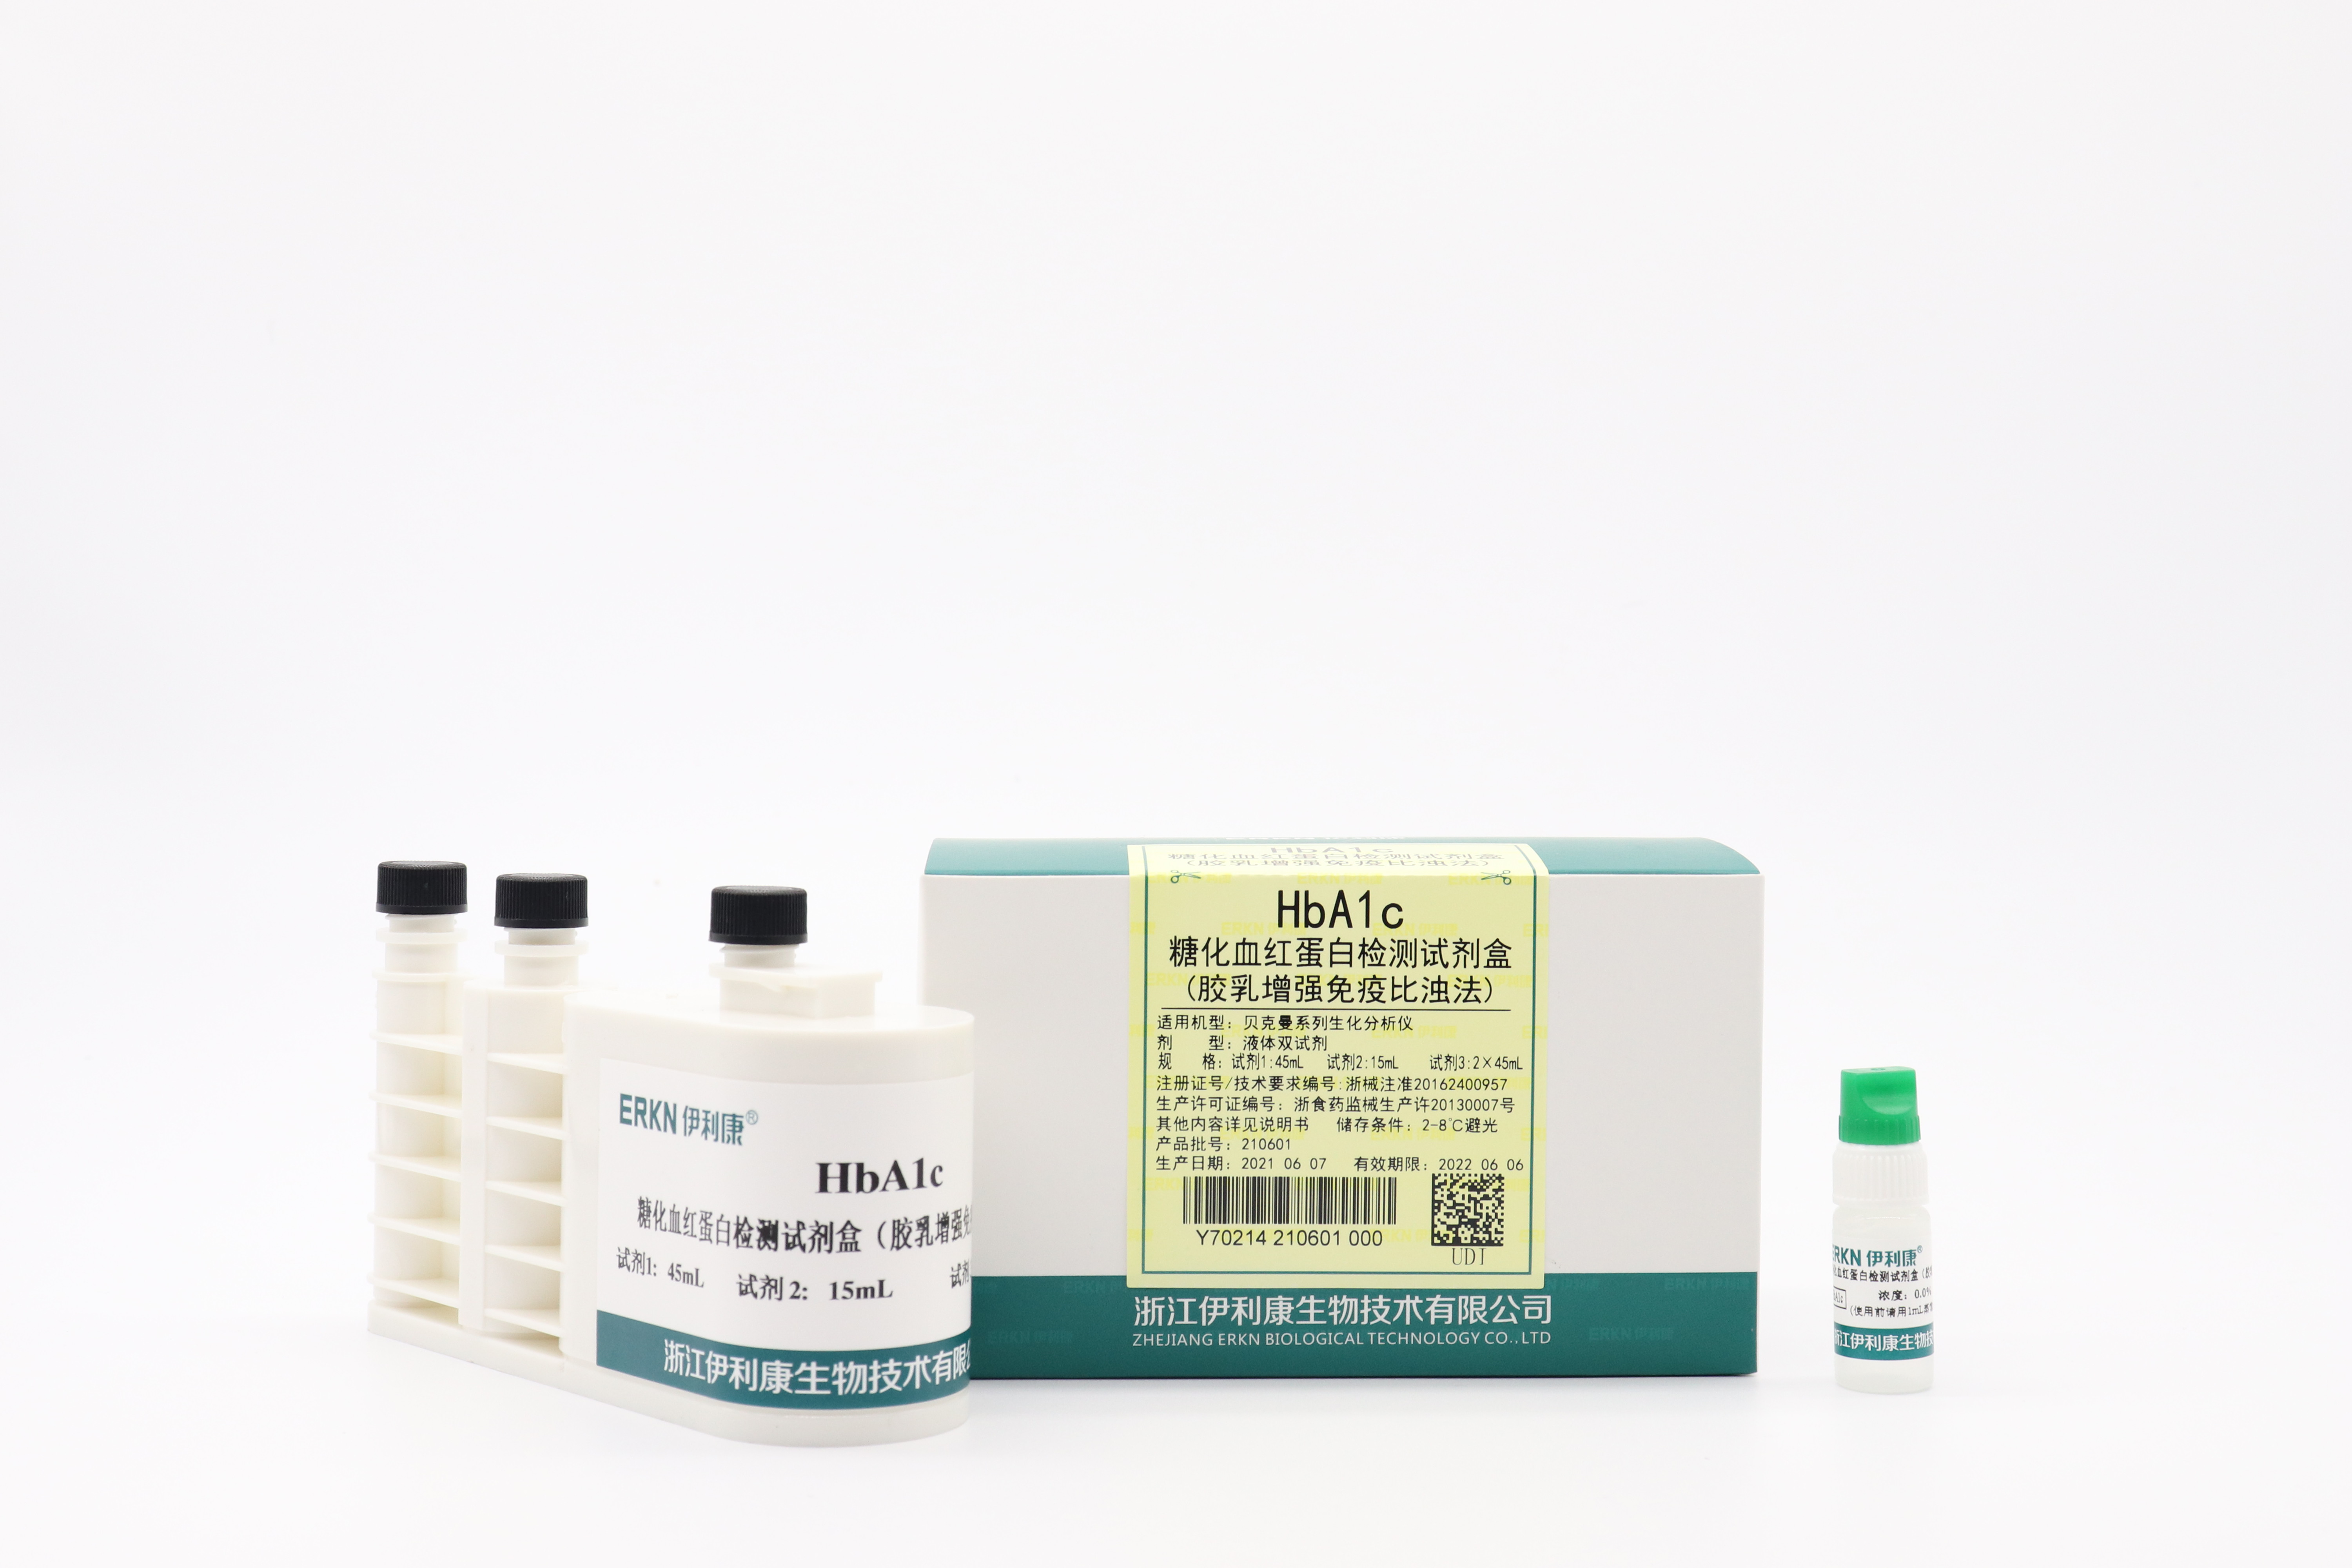 【伊利康】糖化血红蛋白检测试剂盒（胶乳增强免疫比浊法）